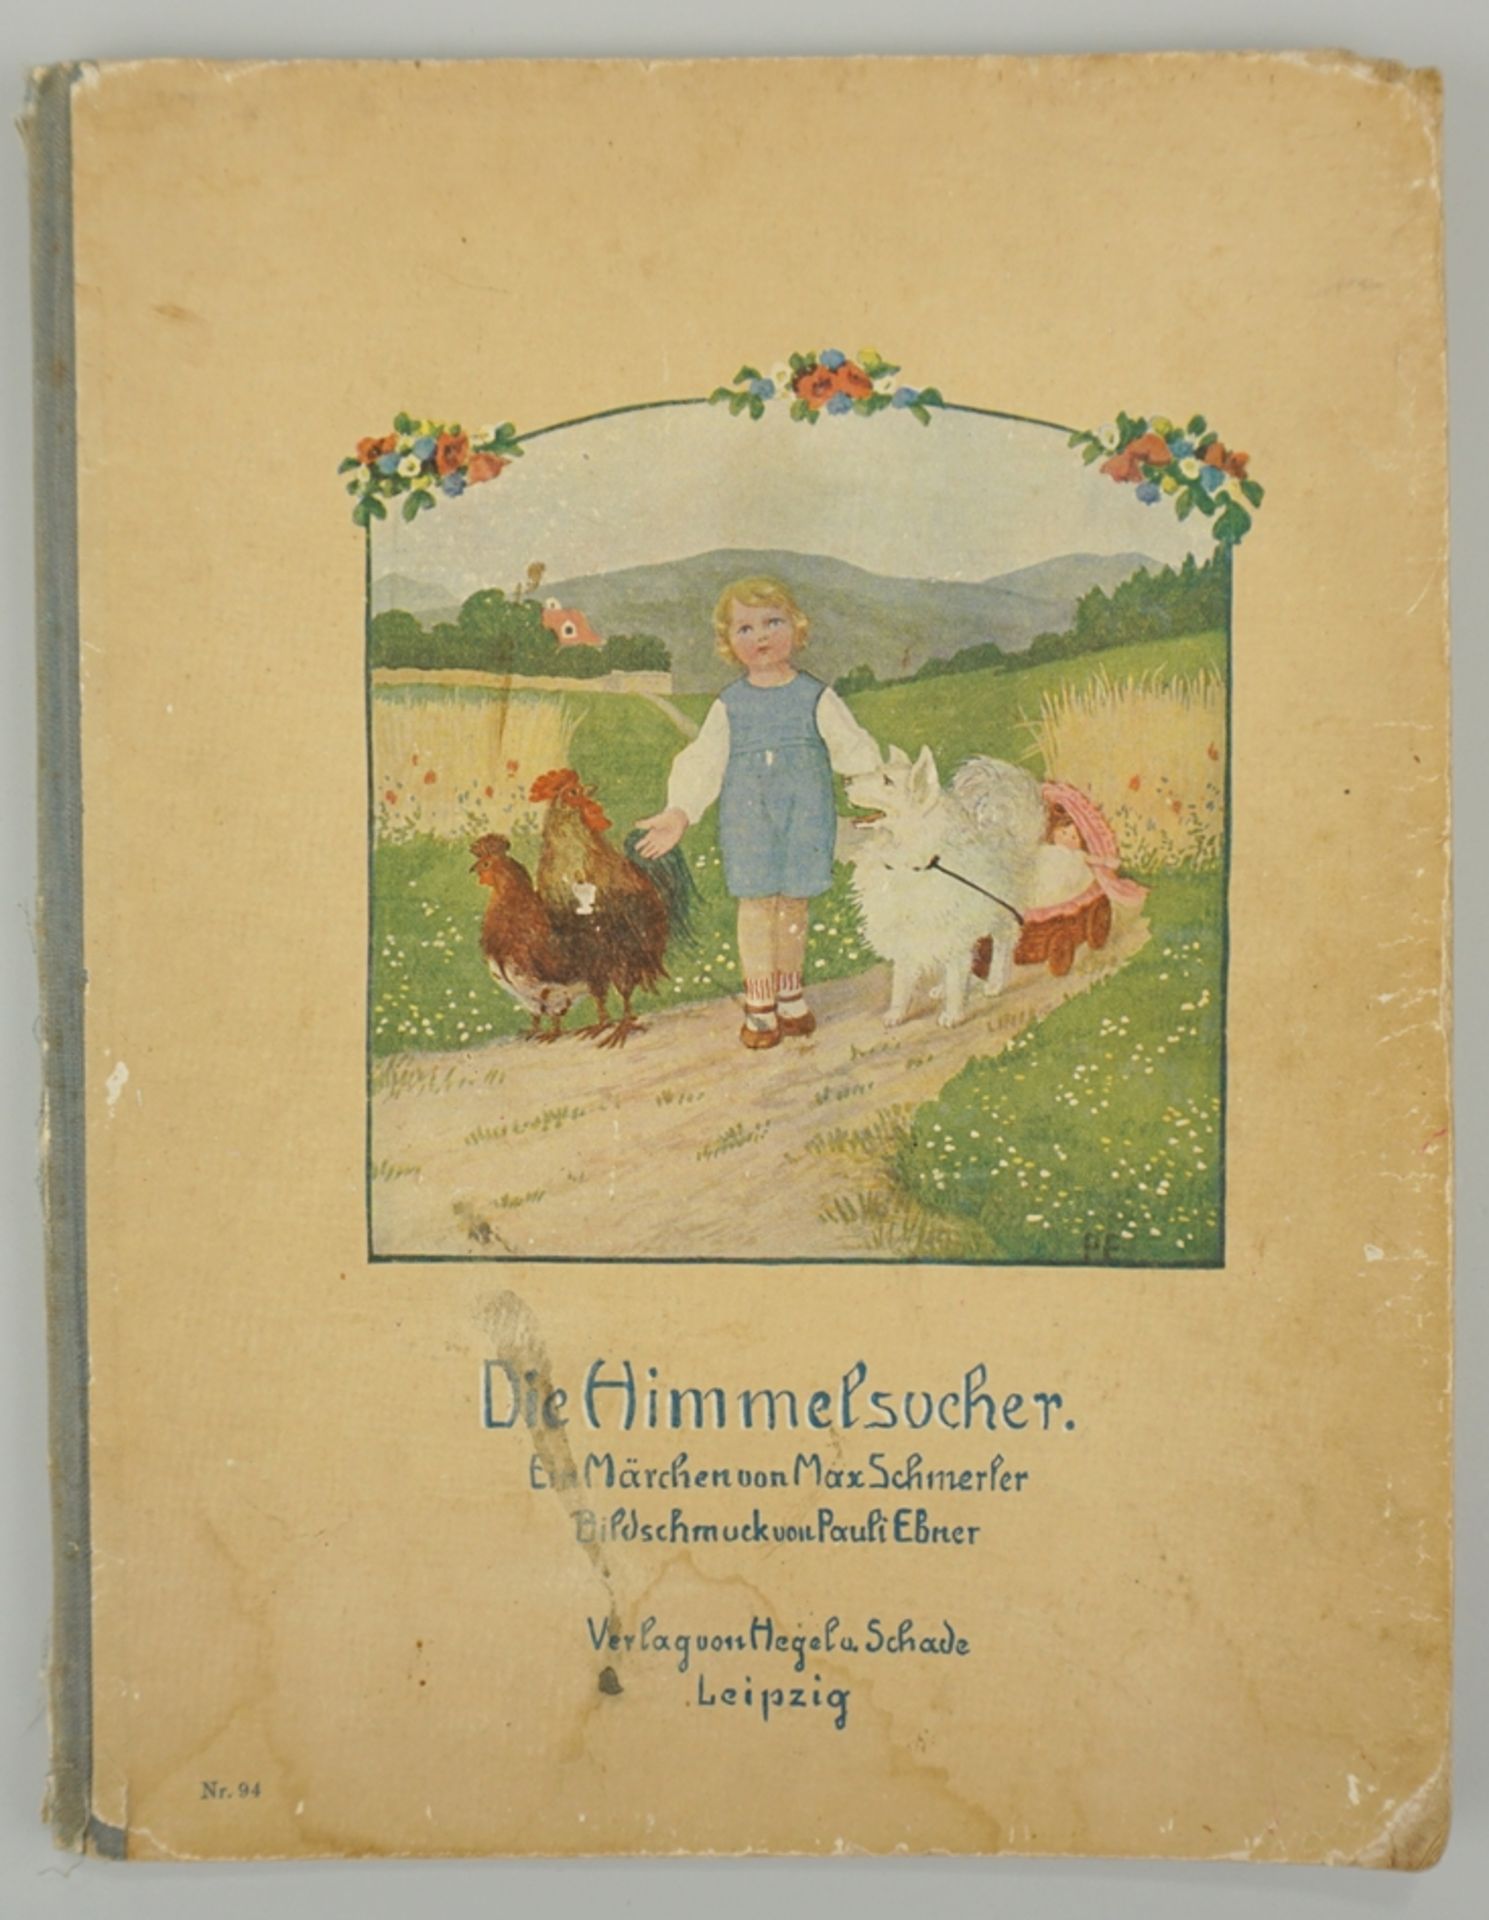 Die Himmelsucher, ein Märchen von Max Schmerler, Bildschmuck Pauli Ebner, um 1910 (o.Jz.)